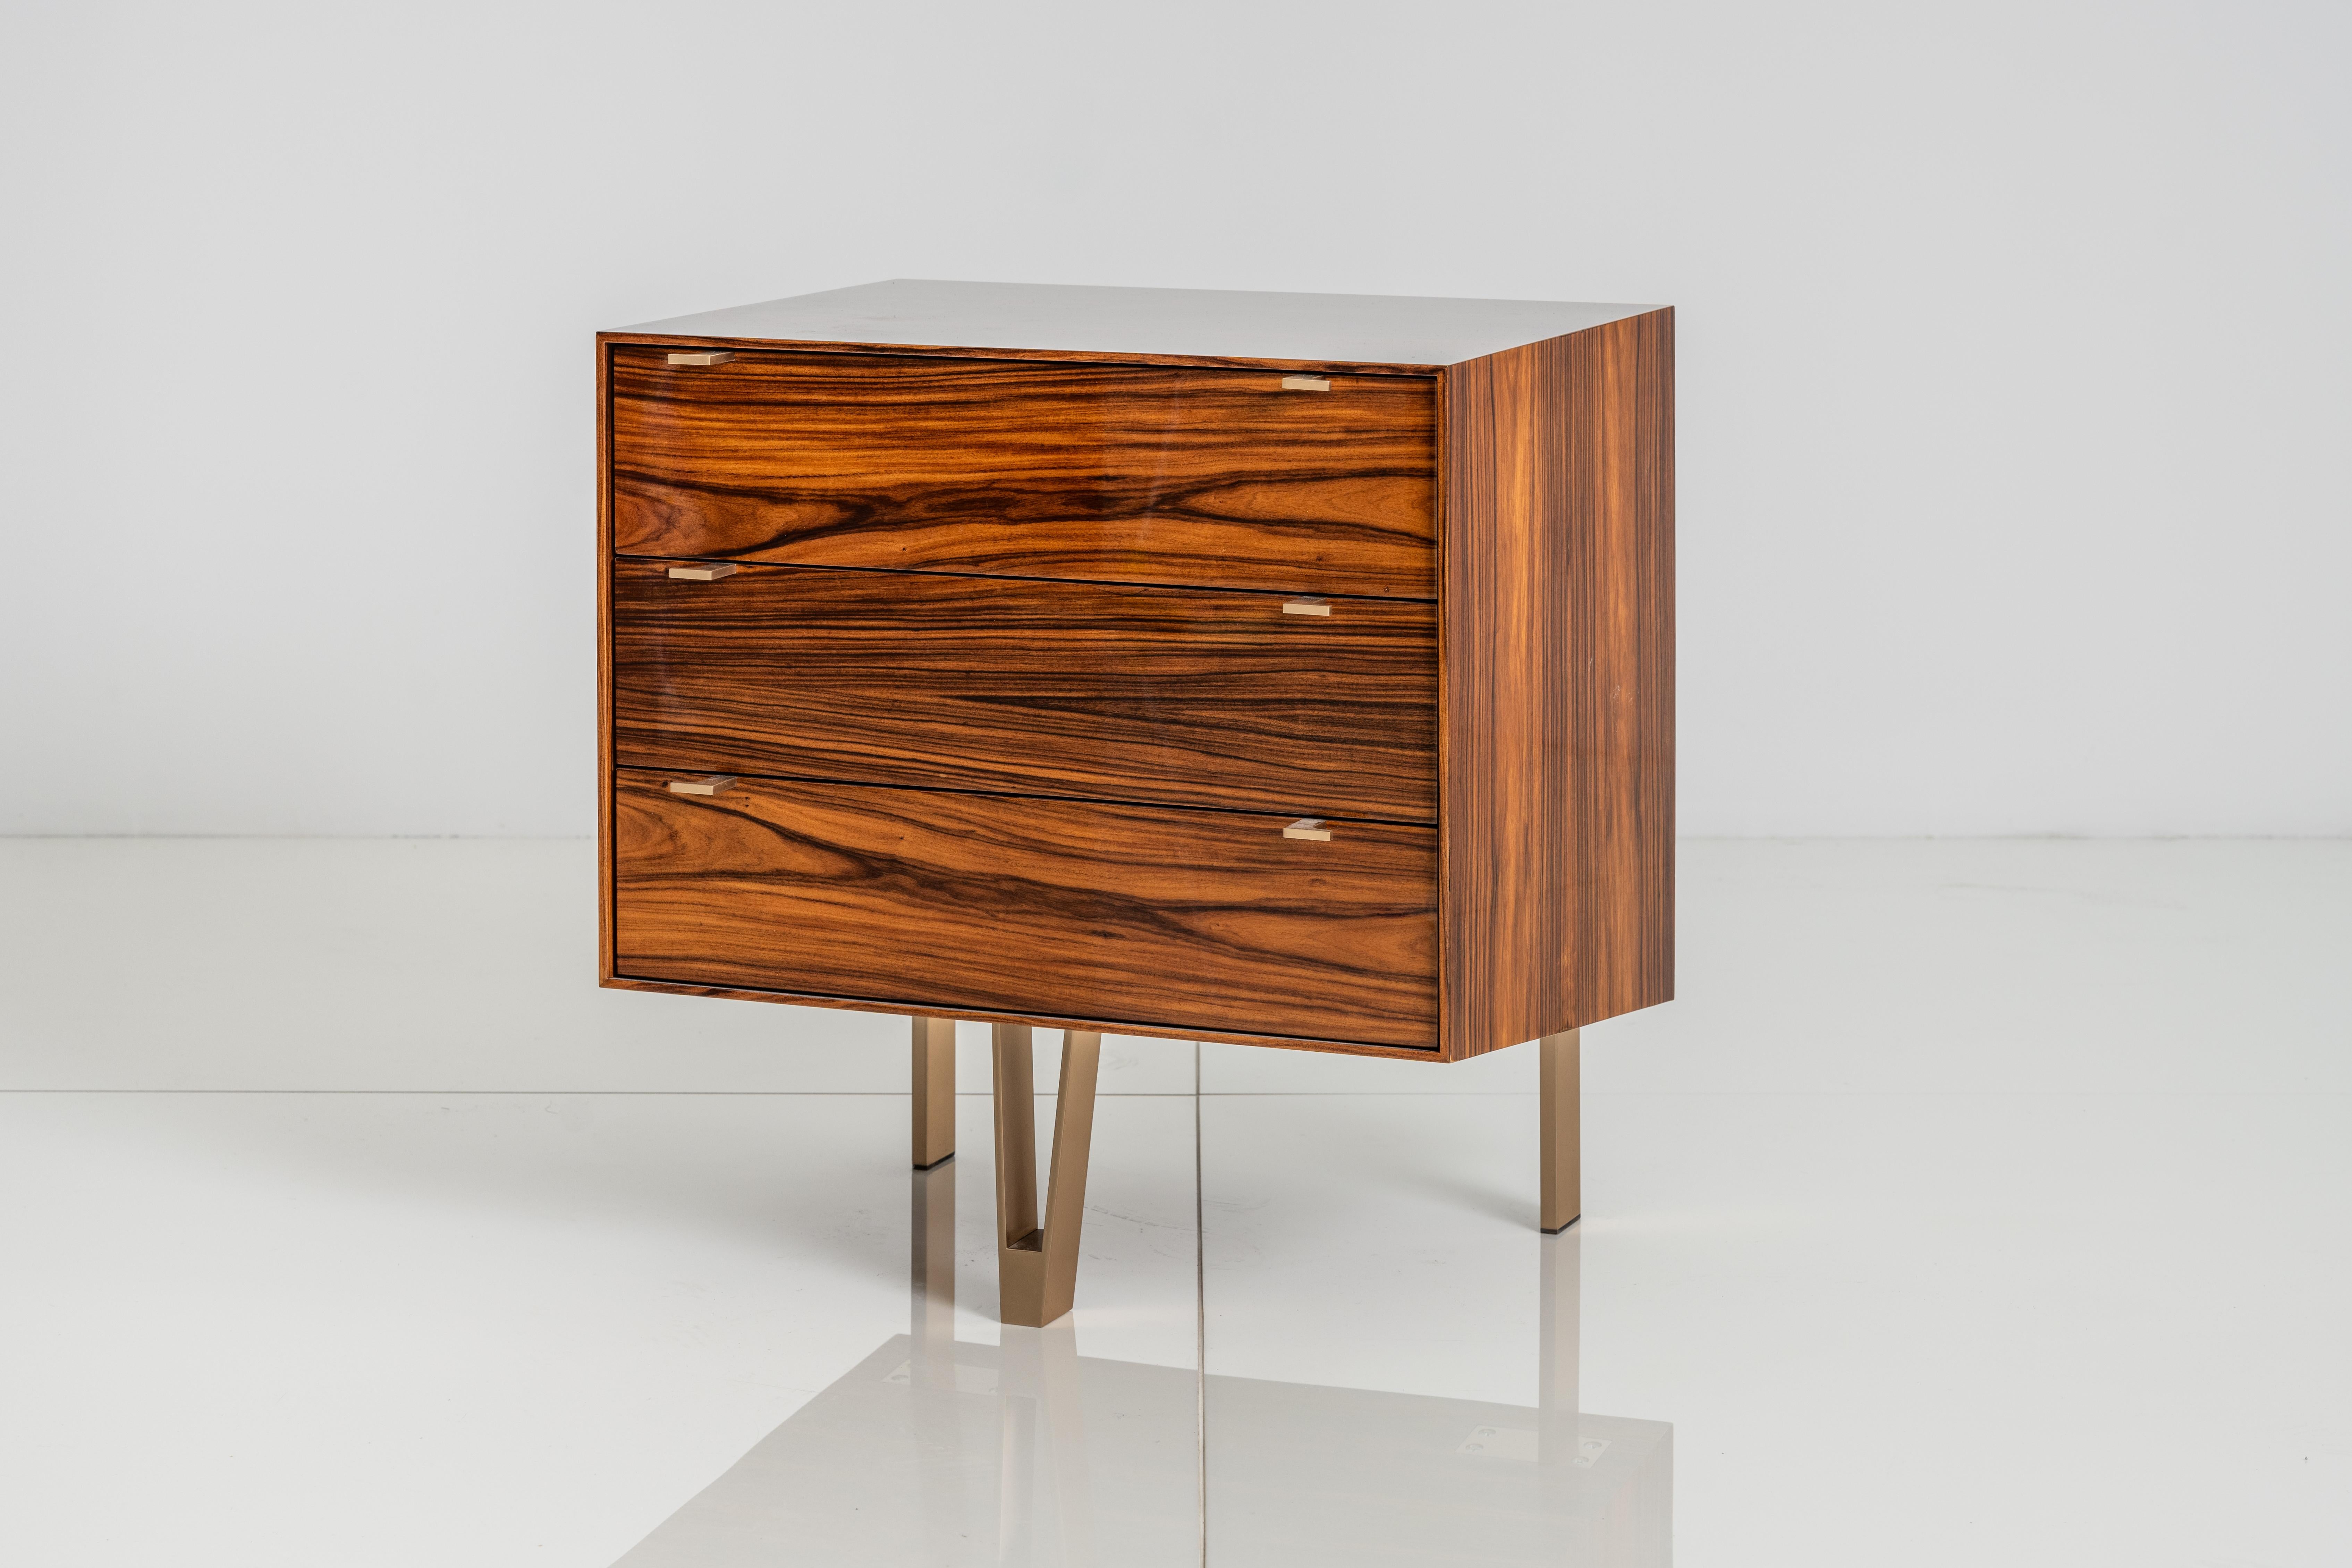 Le meuble d'extrémité Saxton est doté d'un cadre en bois brillant et d'un corps incliné qui lui confère une légèreté visuelle. Comme toutes les pièces de KGBL, cet article est fini sur tous les côtés. 

Il s'agit d'un produit naturel qui peut